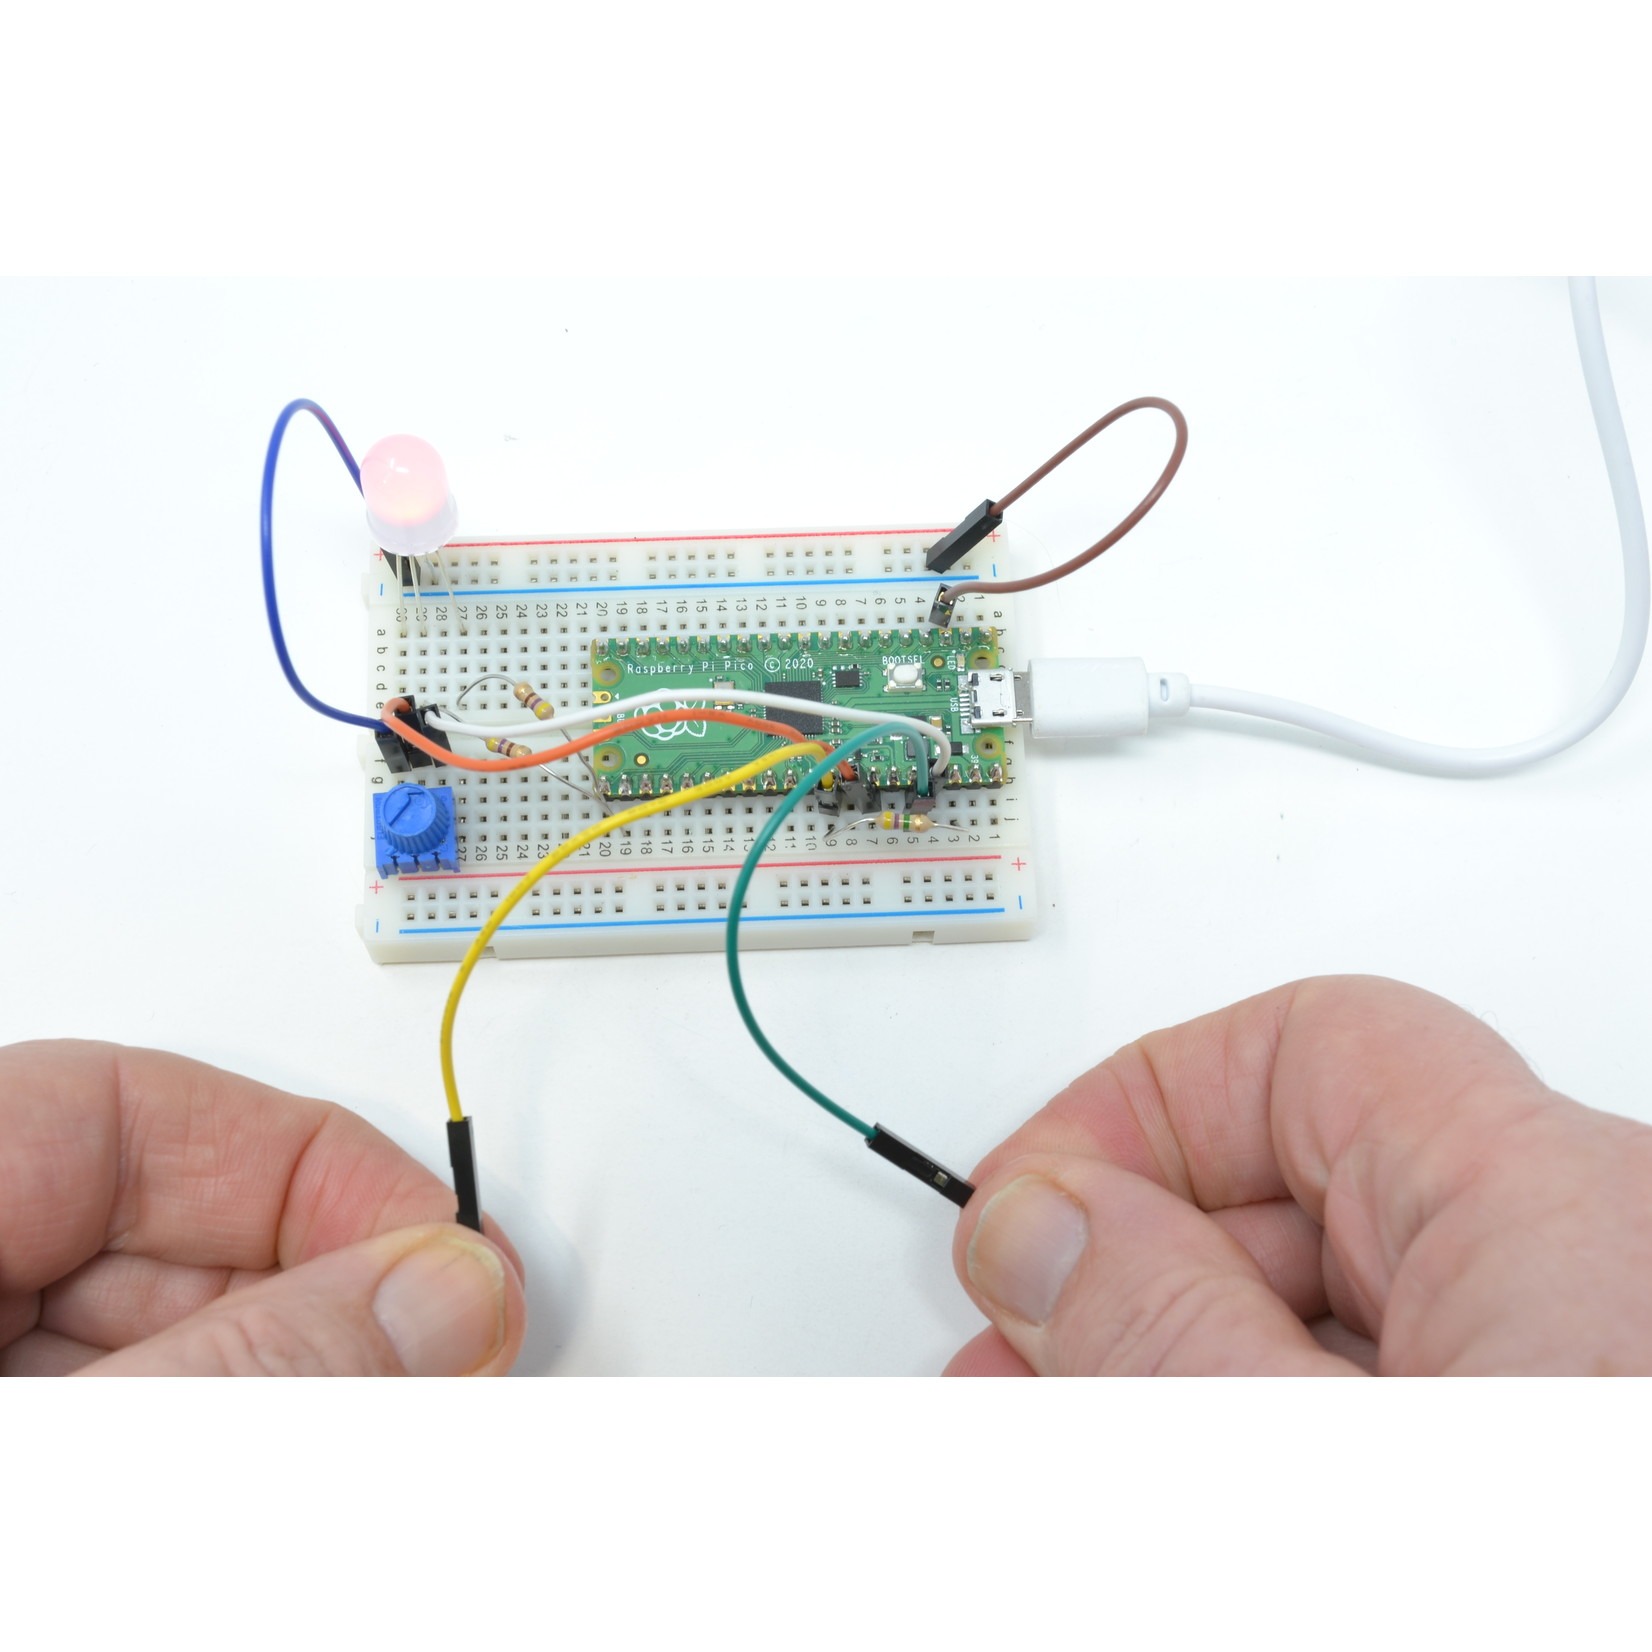 MonkMakes  Kit 1 Electronique pour Raspberry Pico (lite edition)